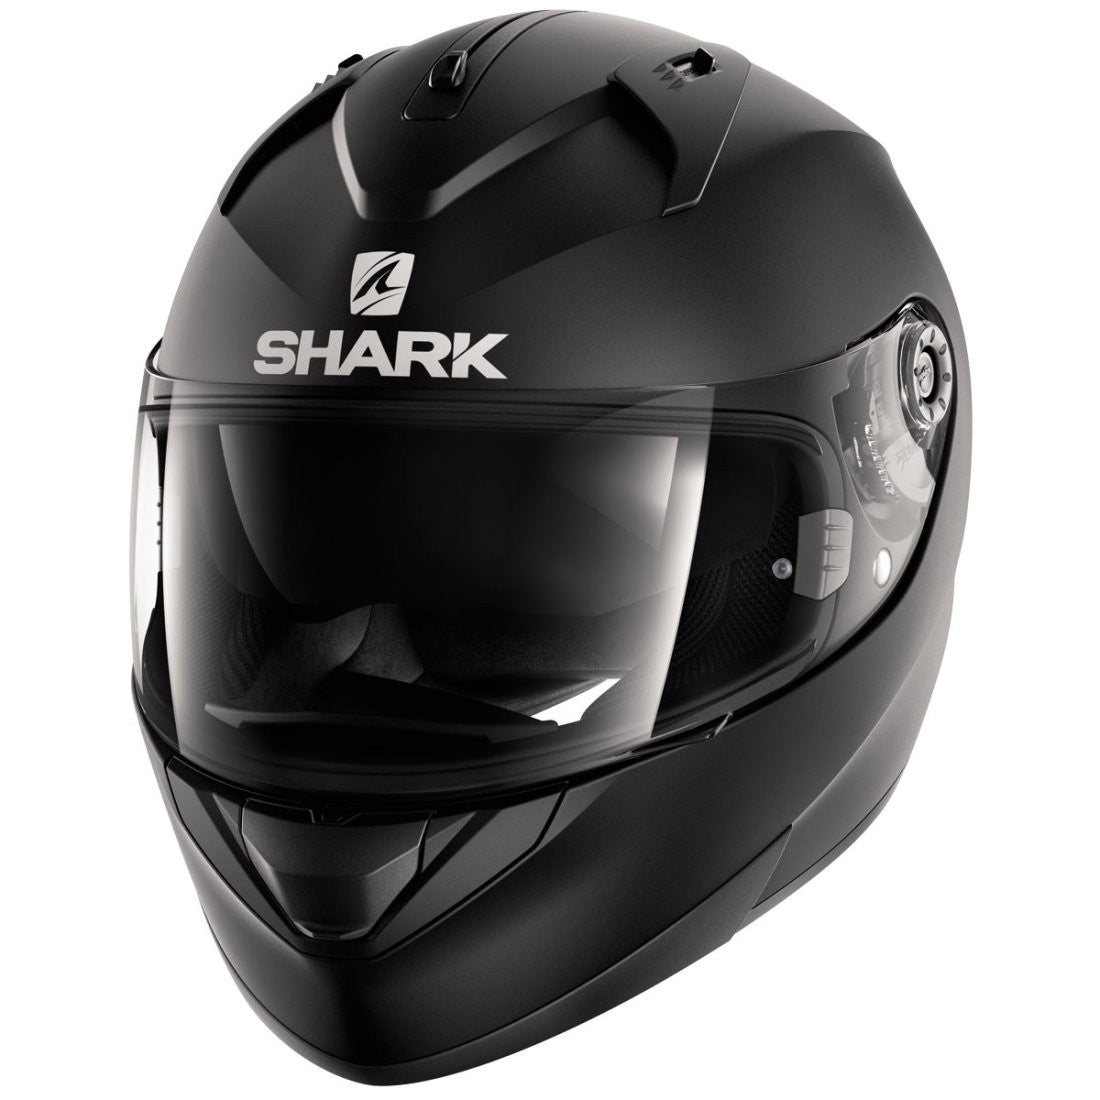 Shark Ridill Blank Matt Black Full Face Road Helmet